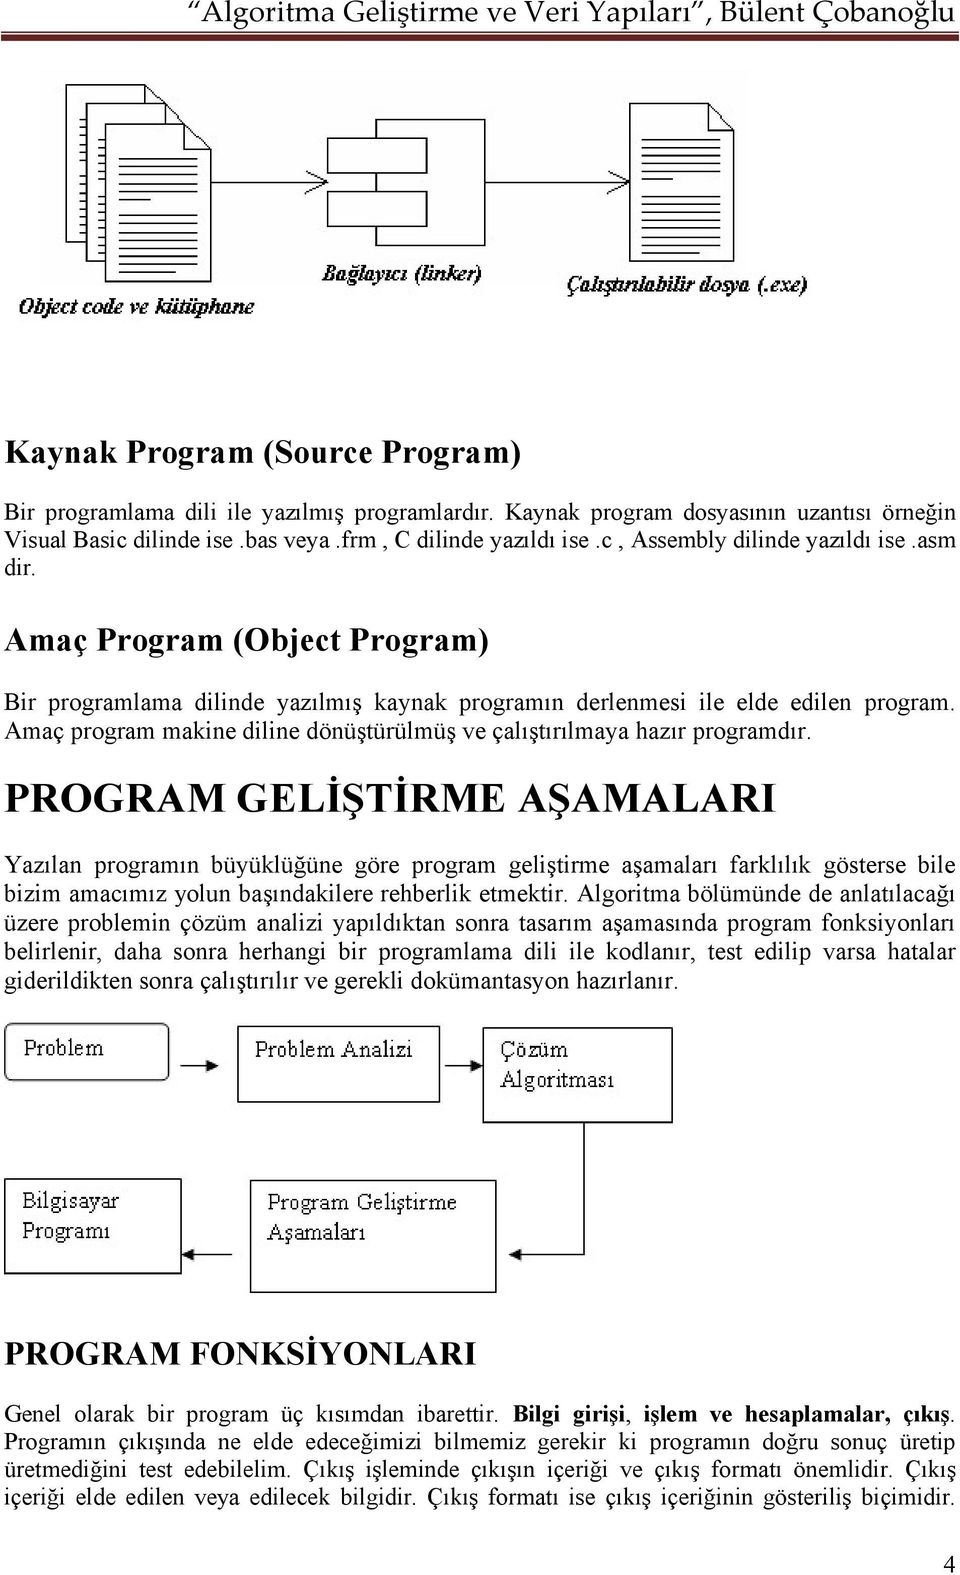 Amaç program makine diline dönüştürülmüş ve çalıştırılmaya hazır programdır.